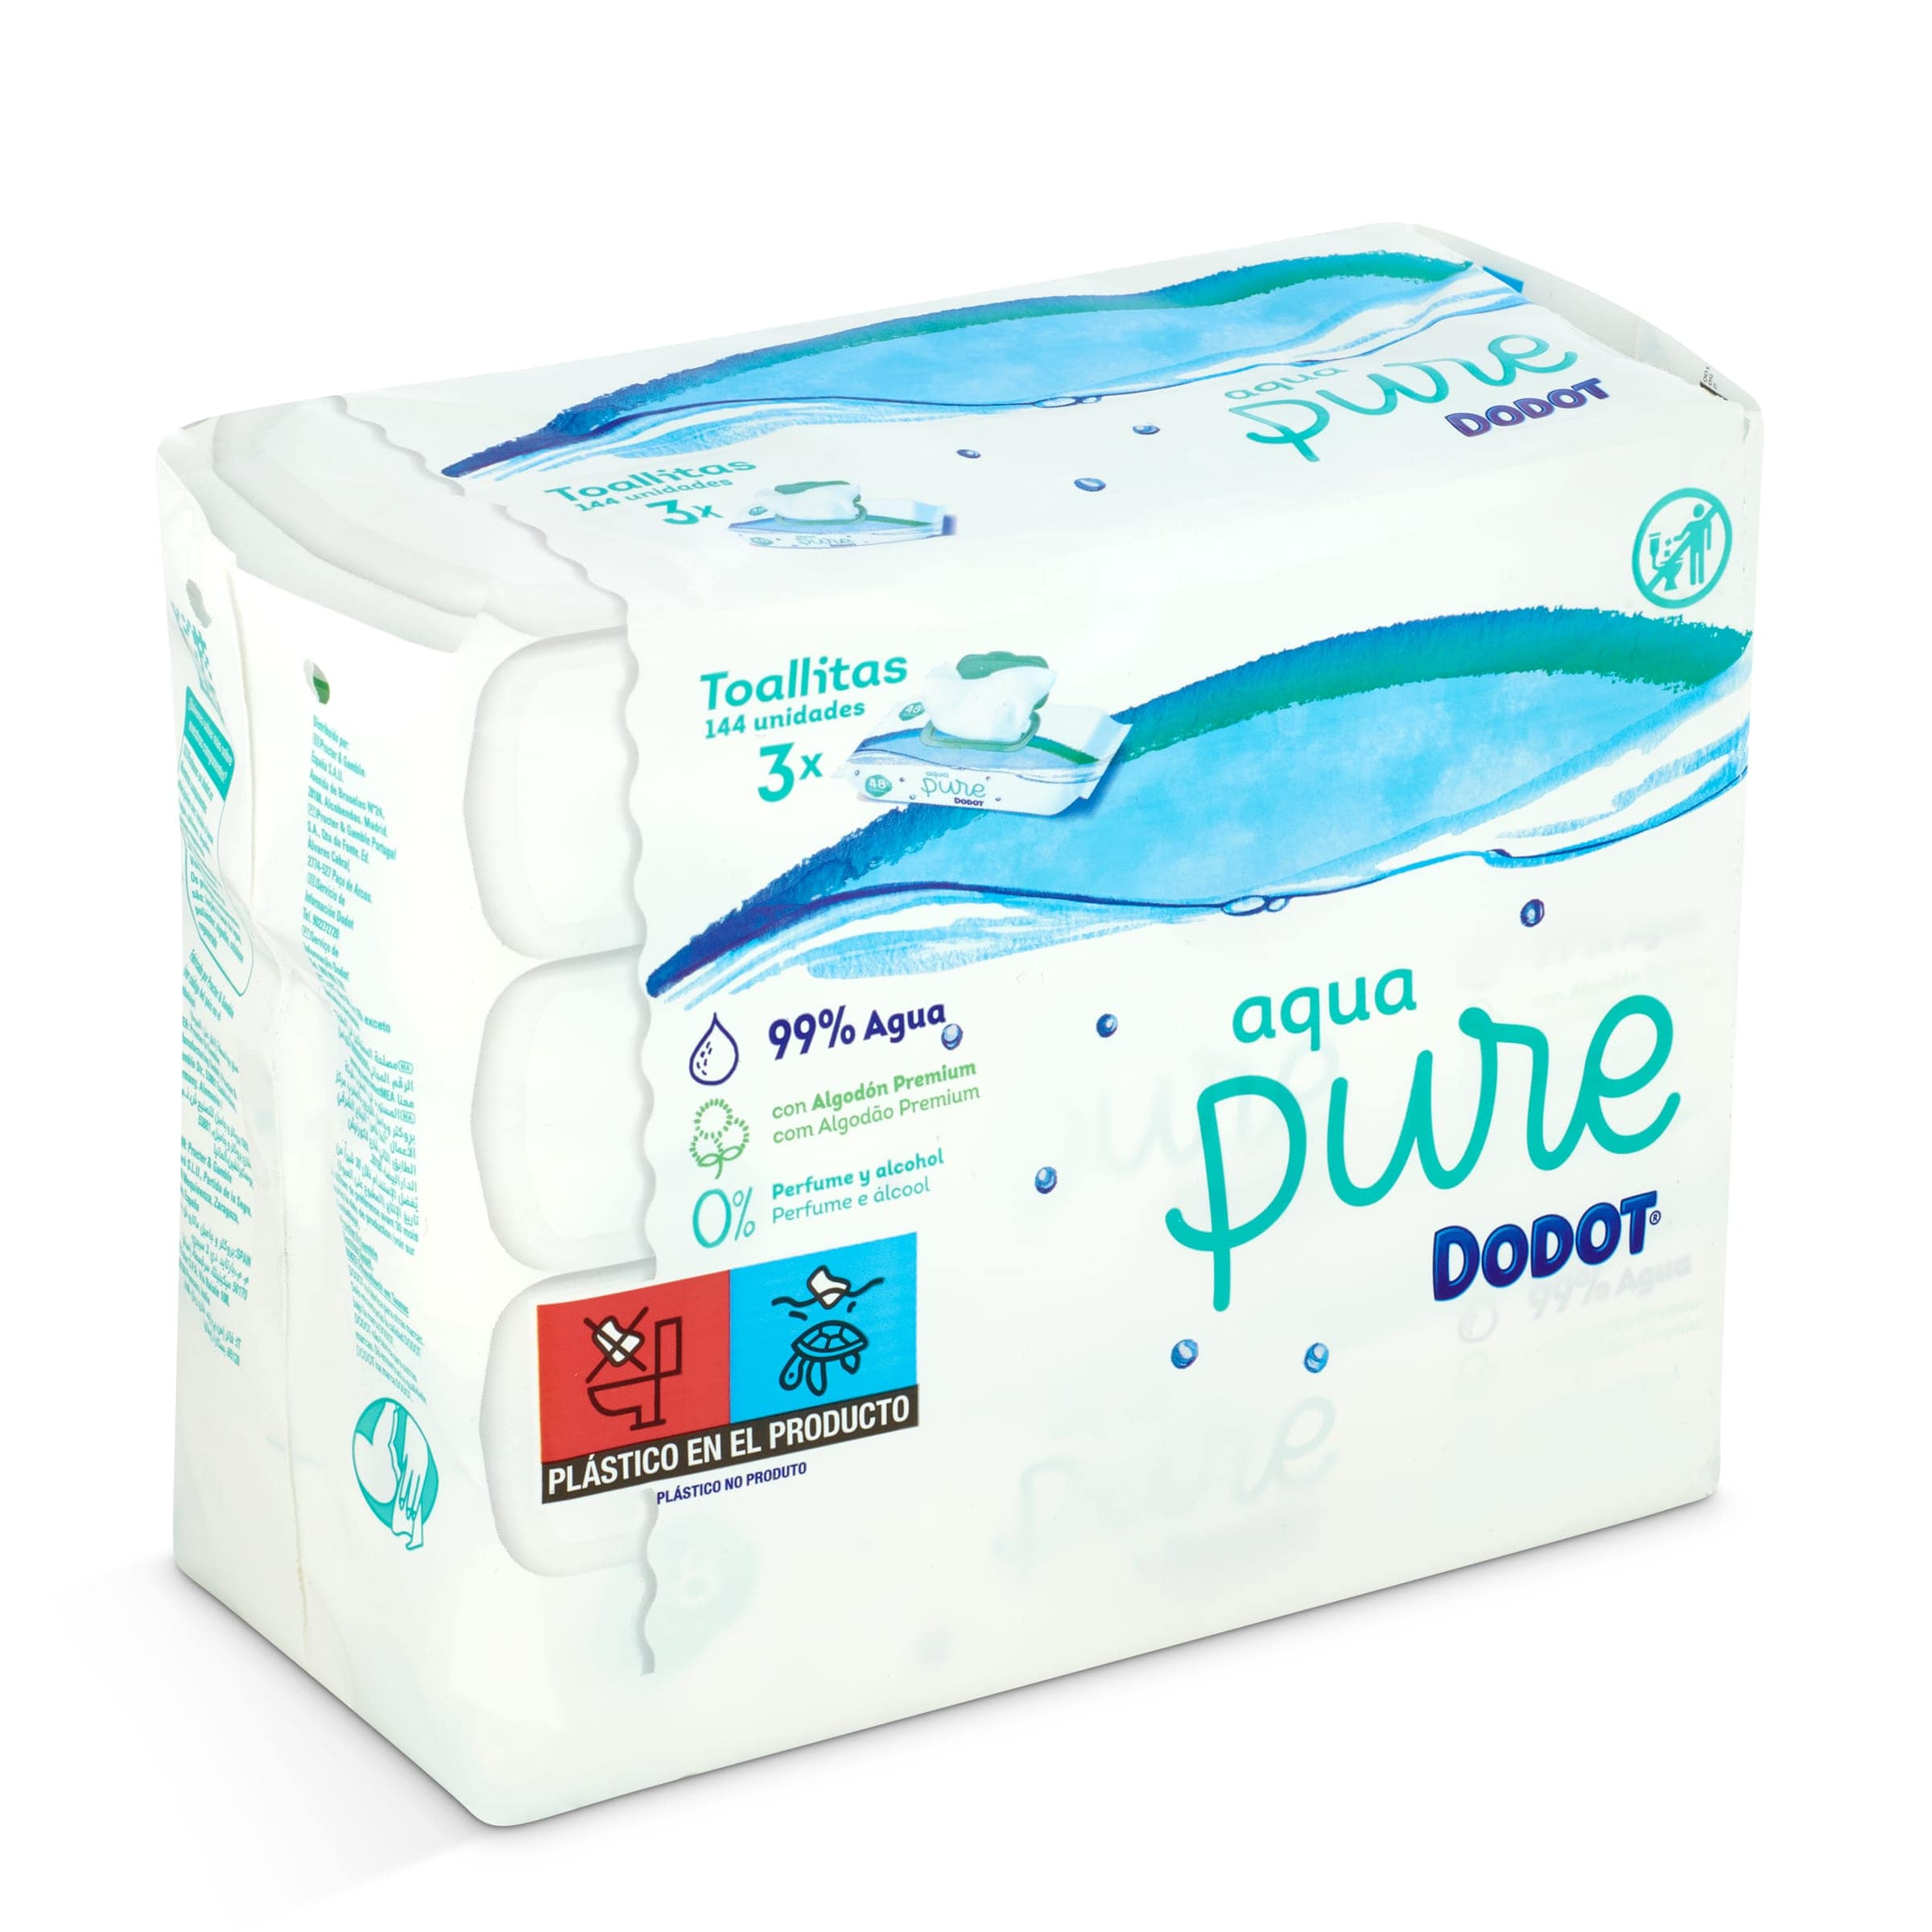 Comprar Toallitas Húmedas Aqua Pure 48 unidades de Dodot